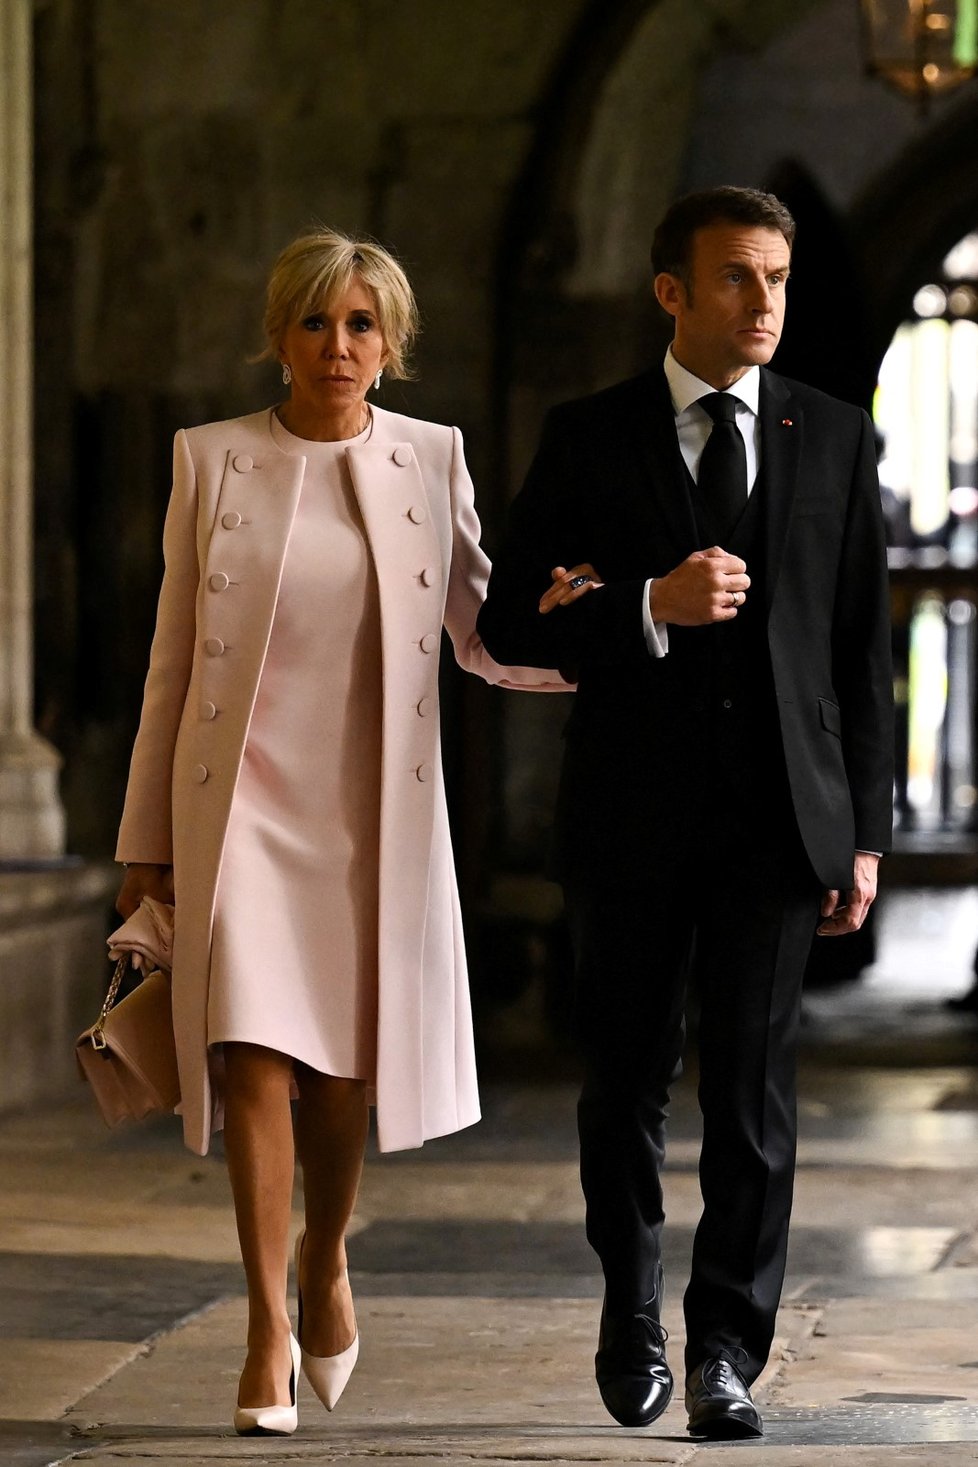 Korunovace Karla III.:  Francouzský prezident Emmanuel Macron s manželkou Brigitte. (6.5.2023)